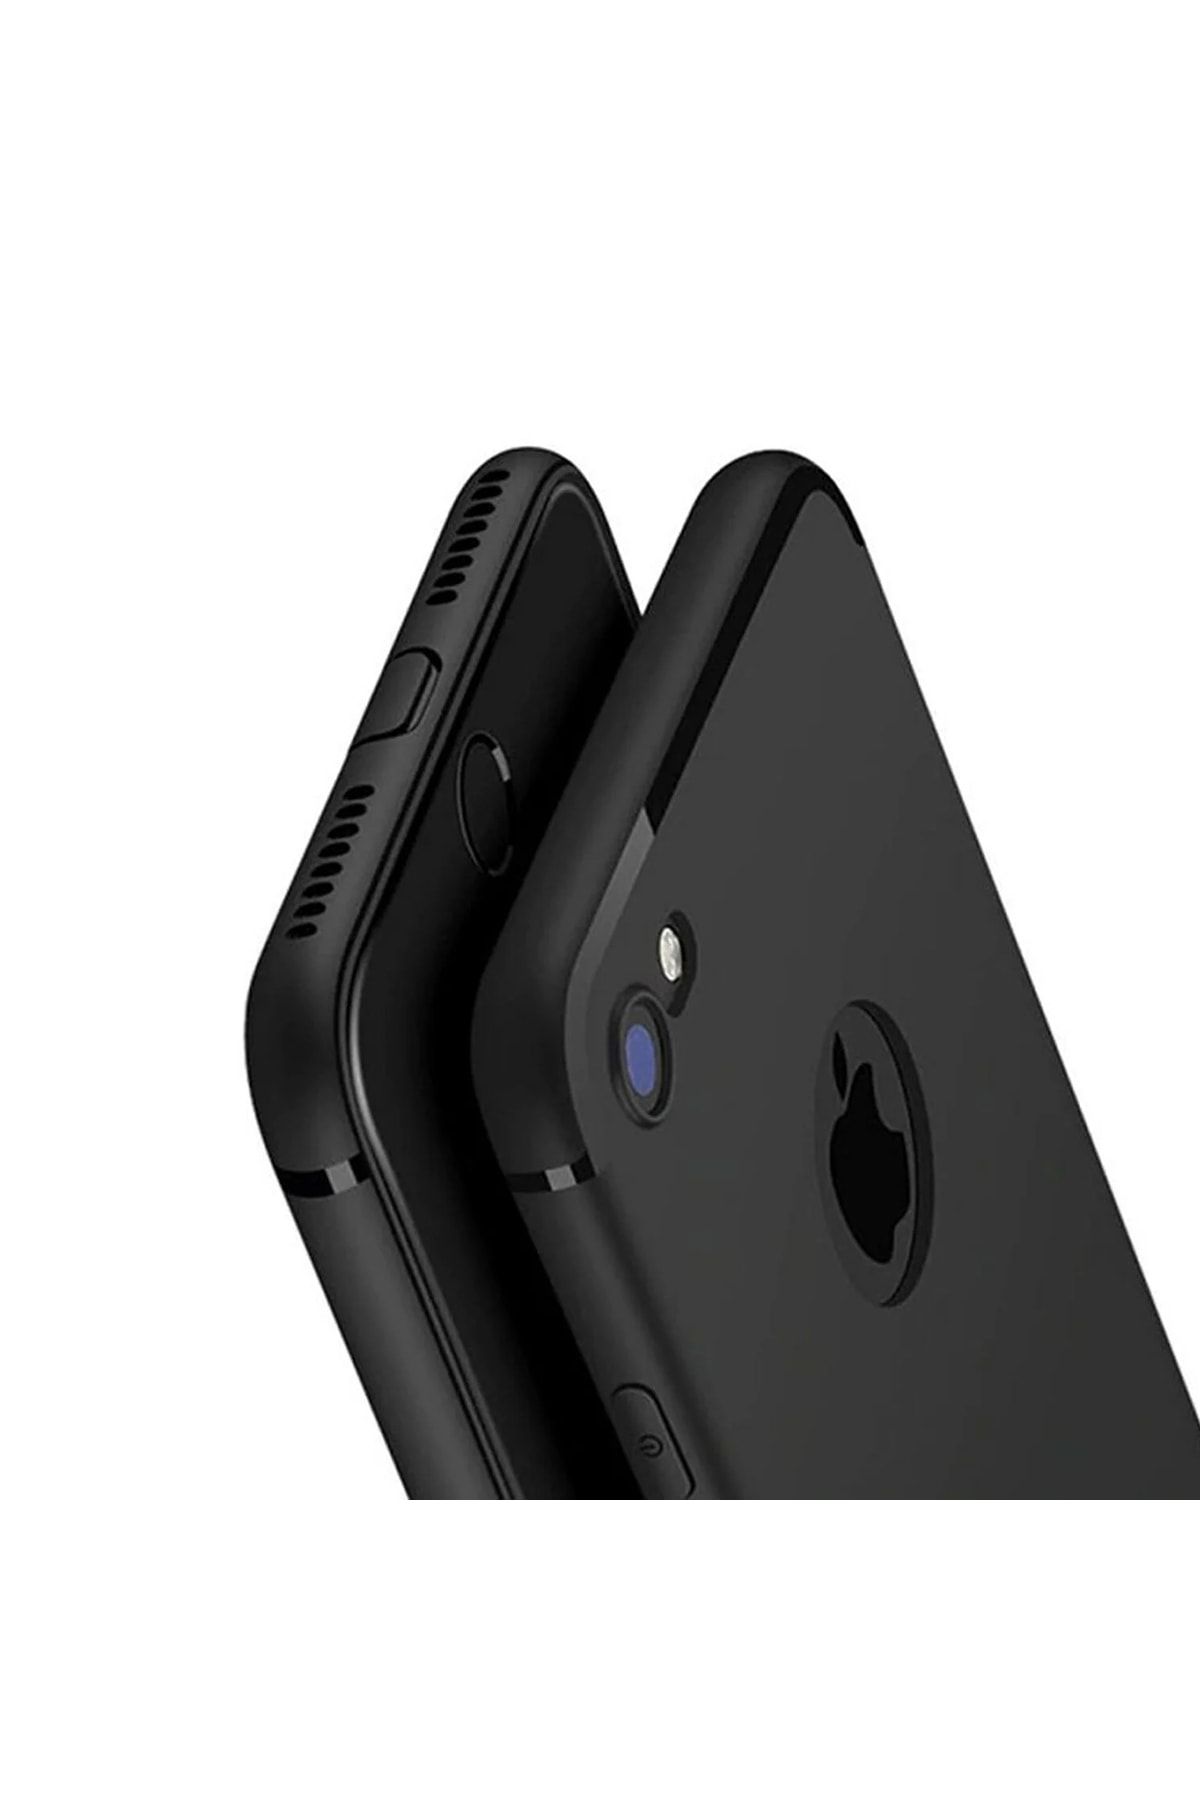 VİZYON Iphone 7 Uyumlu Kılıfı Logo Yeri Açık Esnek Silikon Kılıf Kapak Siyah